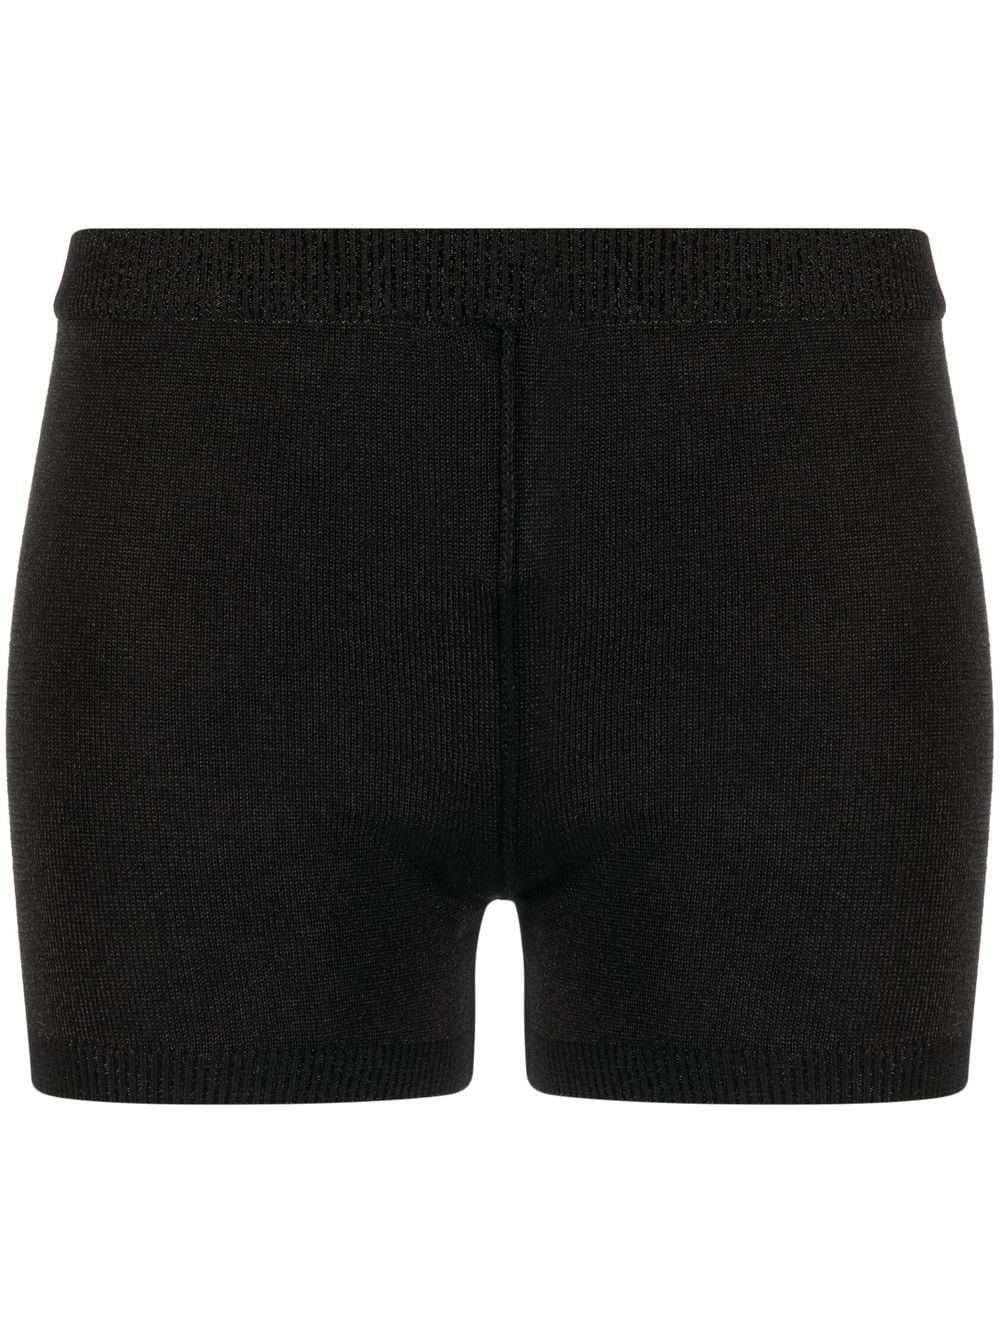 1017 ALYX 9SM hip-strap knit shorts - Black von 1017 ALYX 9SM